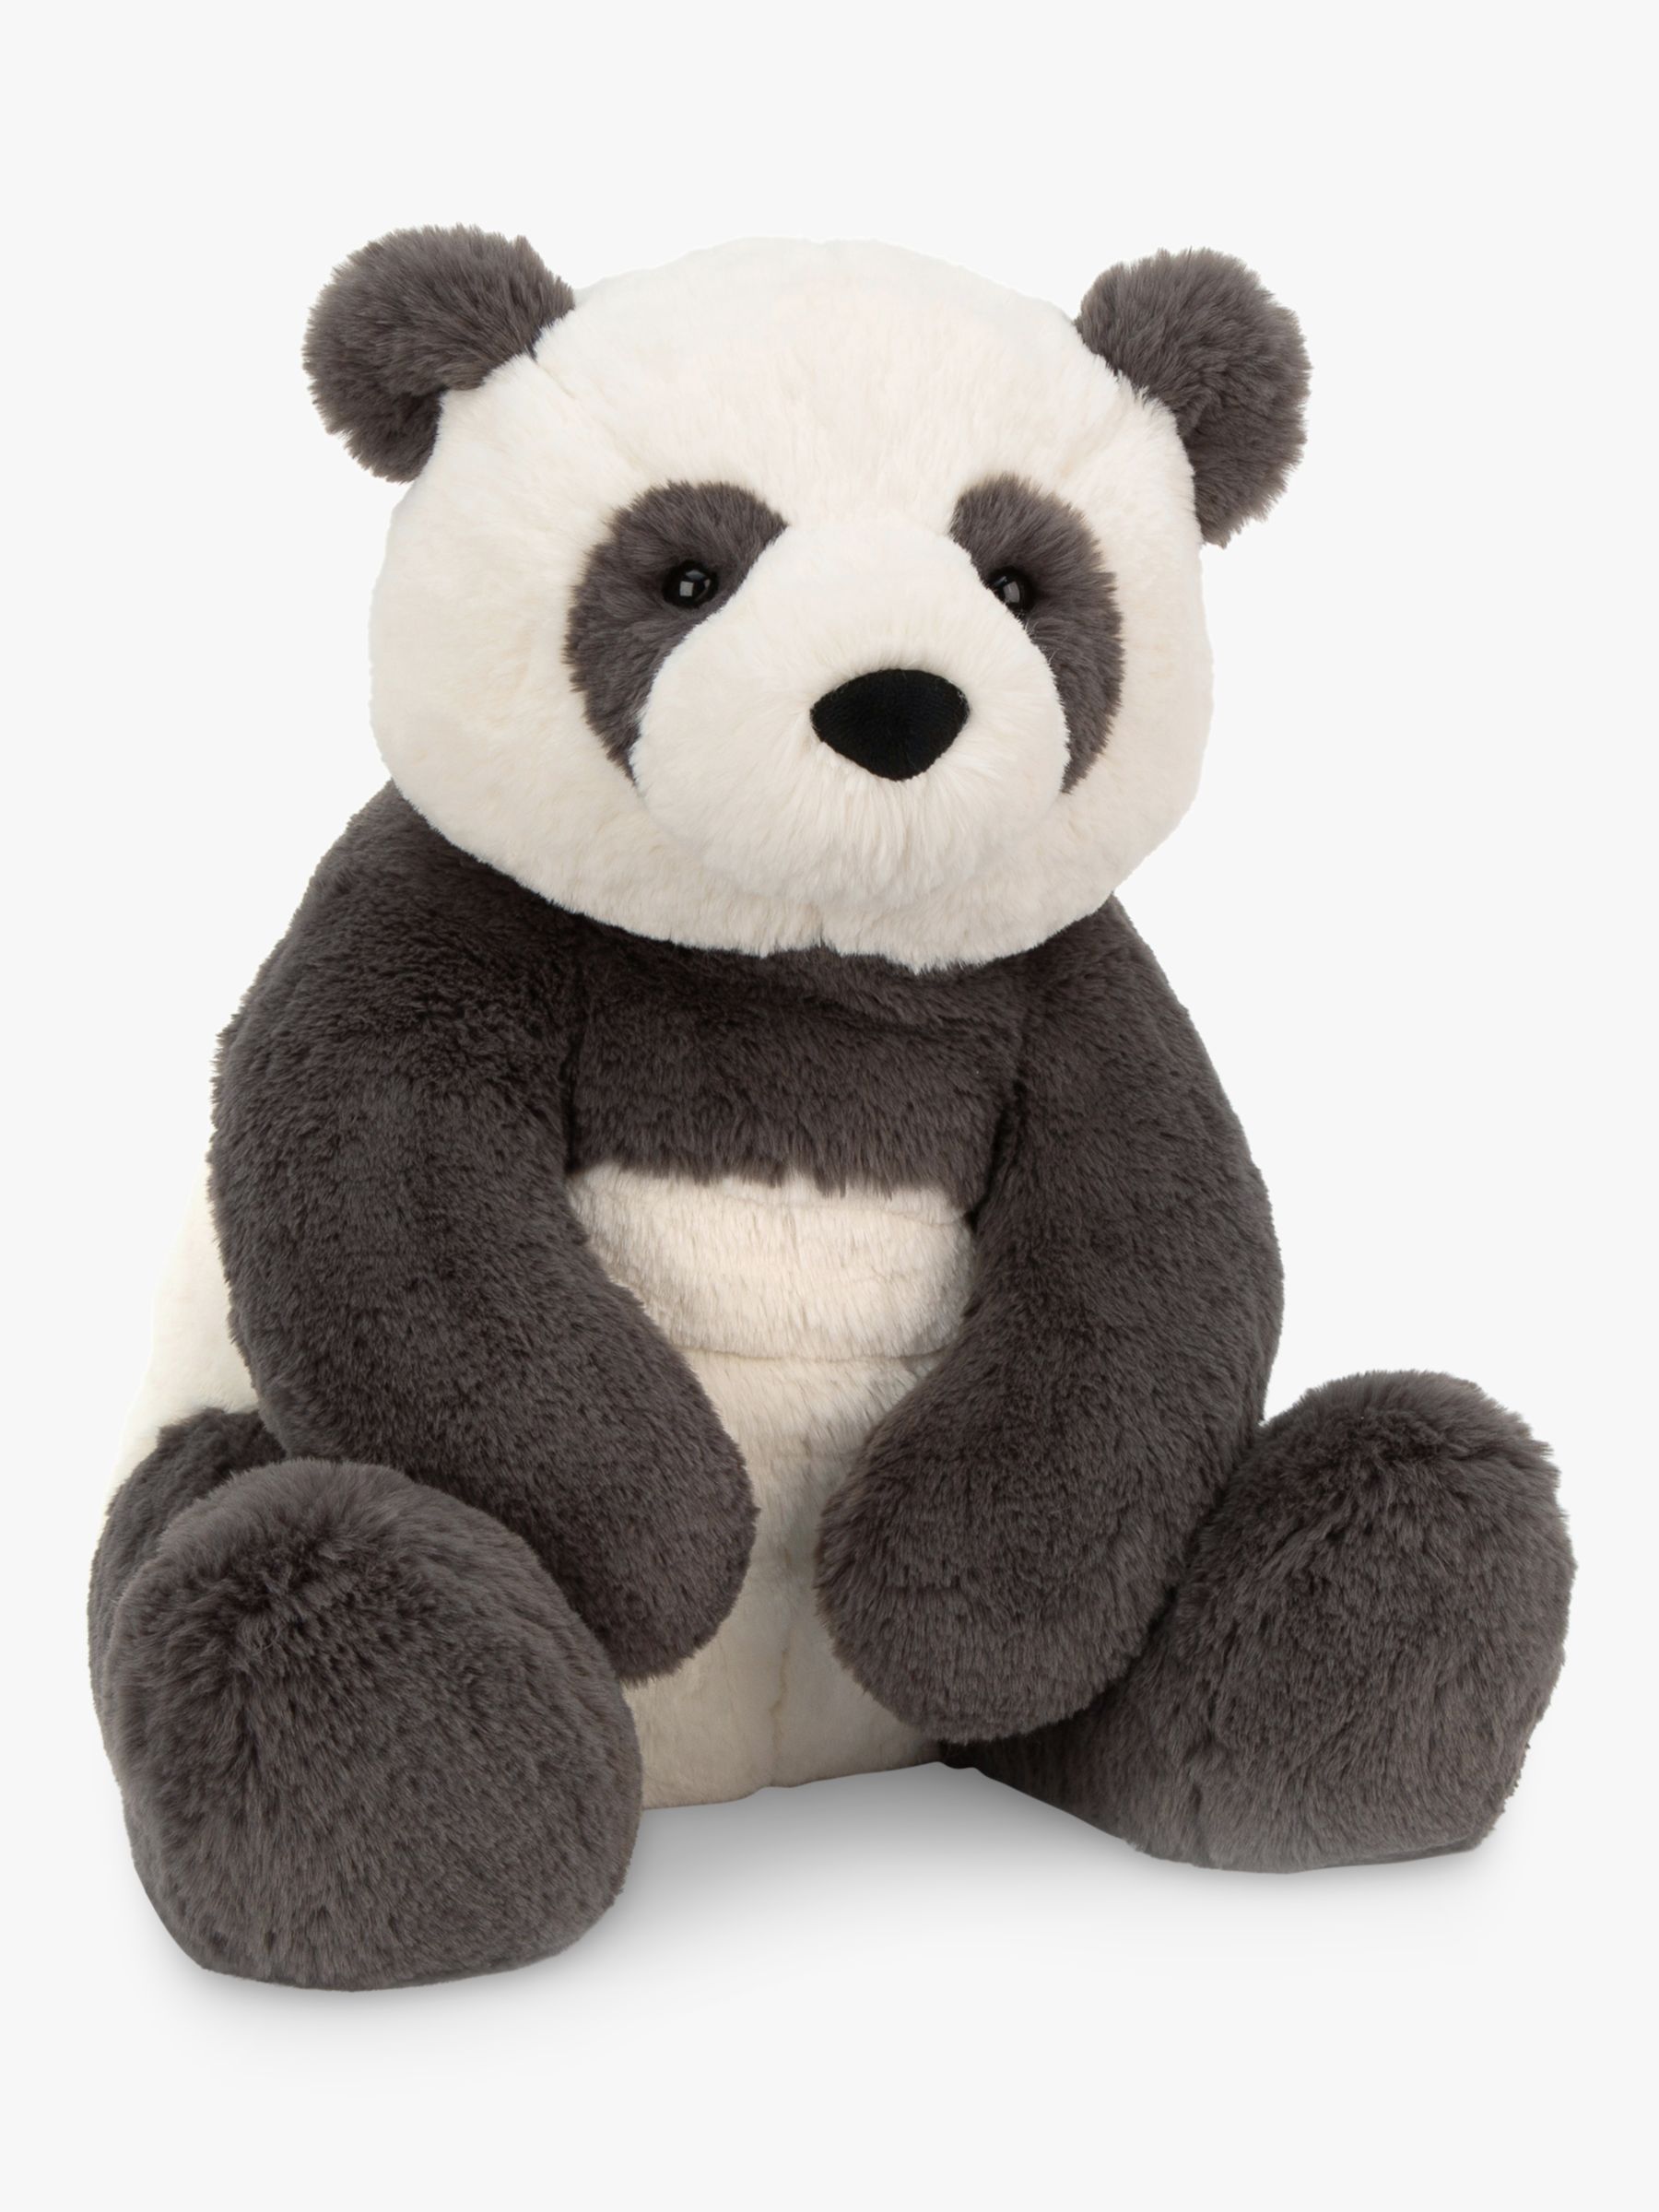 panda cuddly toy